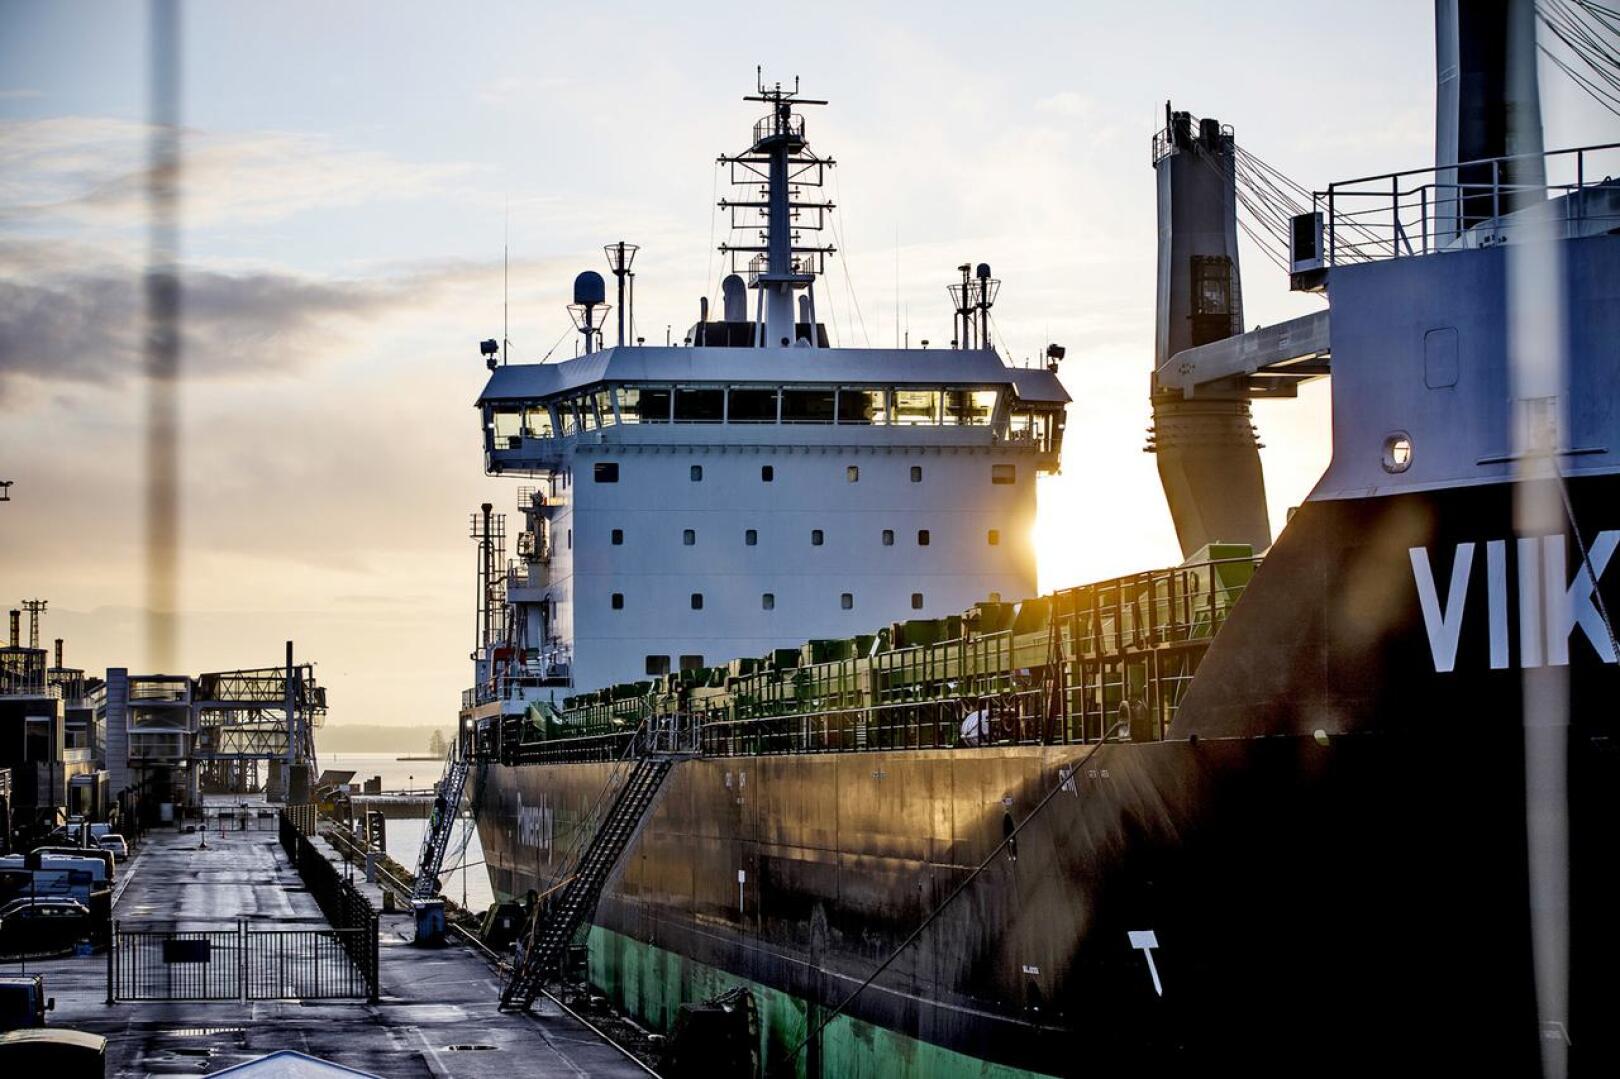 Tullissa odotetaan, että laivarahtiliikenne lähtee kunnolla käyntiin Britannian ja Suomen välillä. Vuoden alussa tavaraliikenteessä on ollut hiljaista. Arkistokuvassa ESL Shippingin irtolastilaiva Viikki Katajanokan laiturissa Helsingissä vuonna 2018.